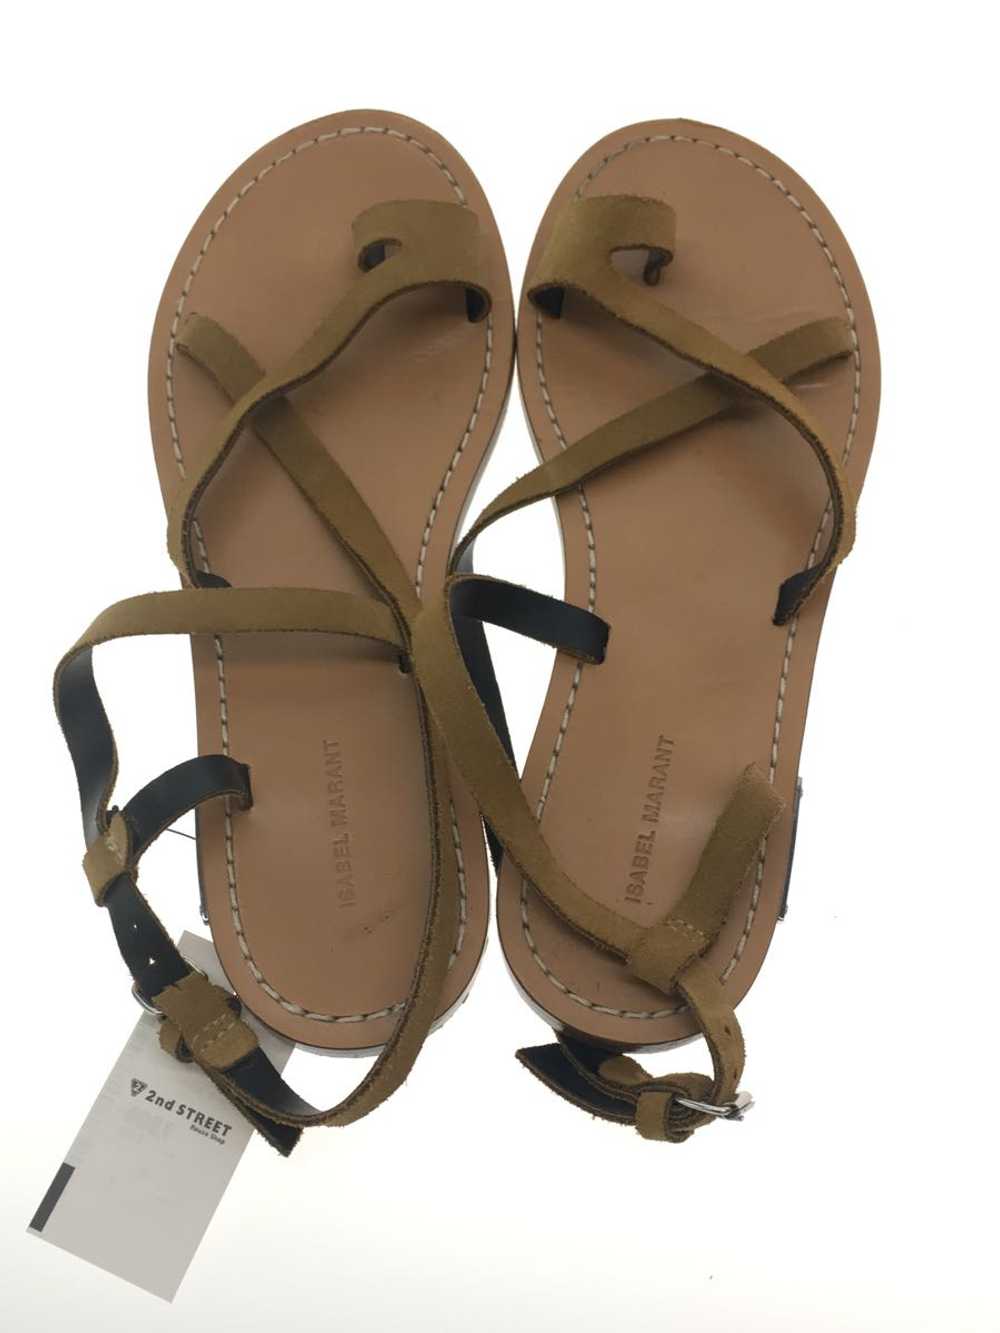 Isabel Marant Sandals/37/Camel/Suede Shoes BLr22 - image 3